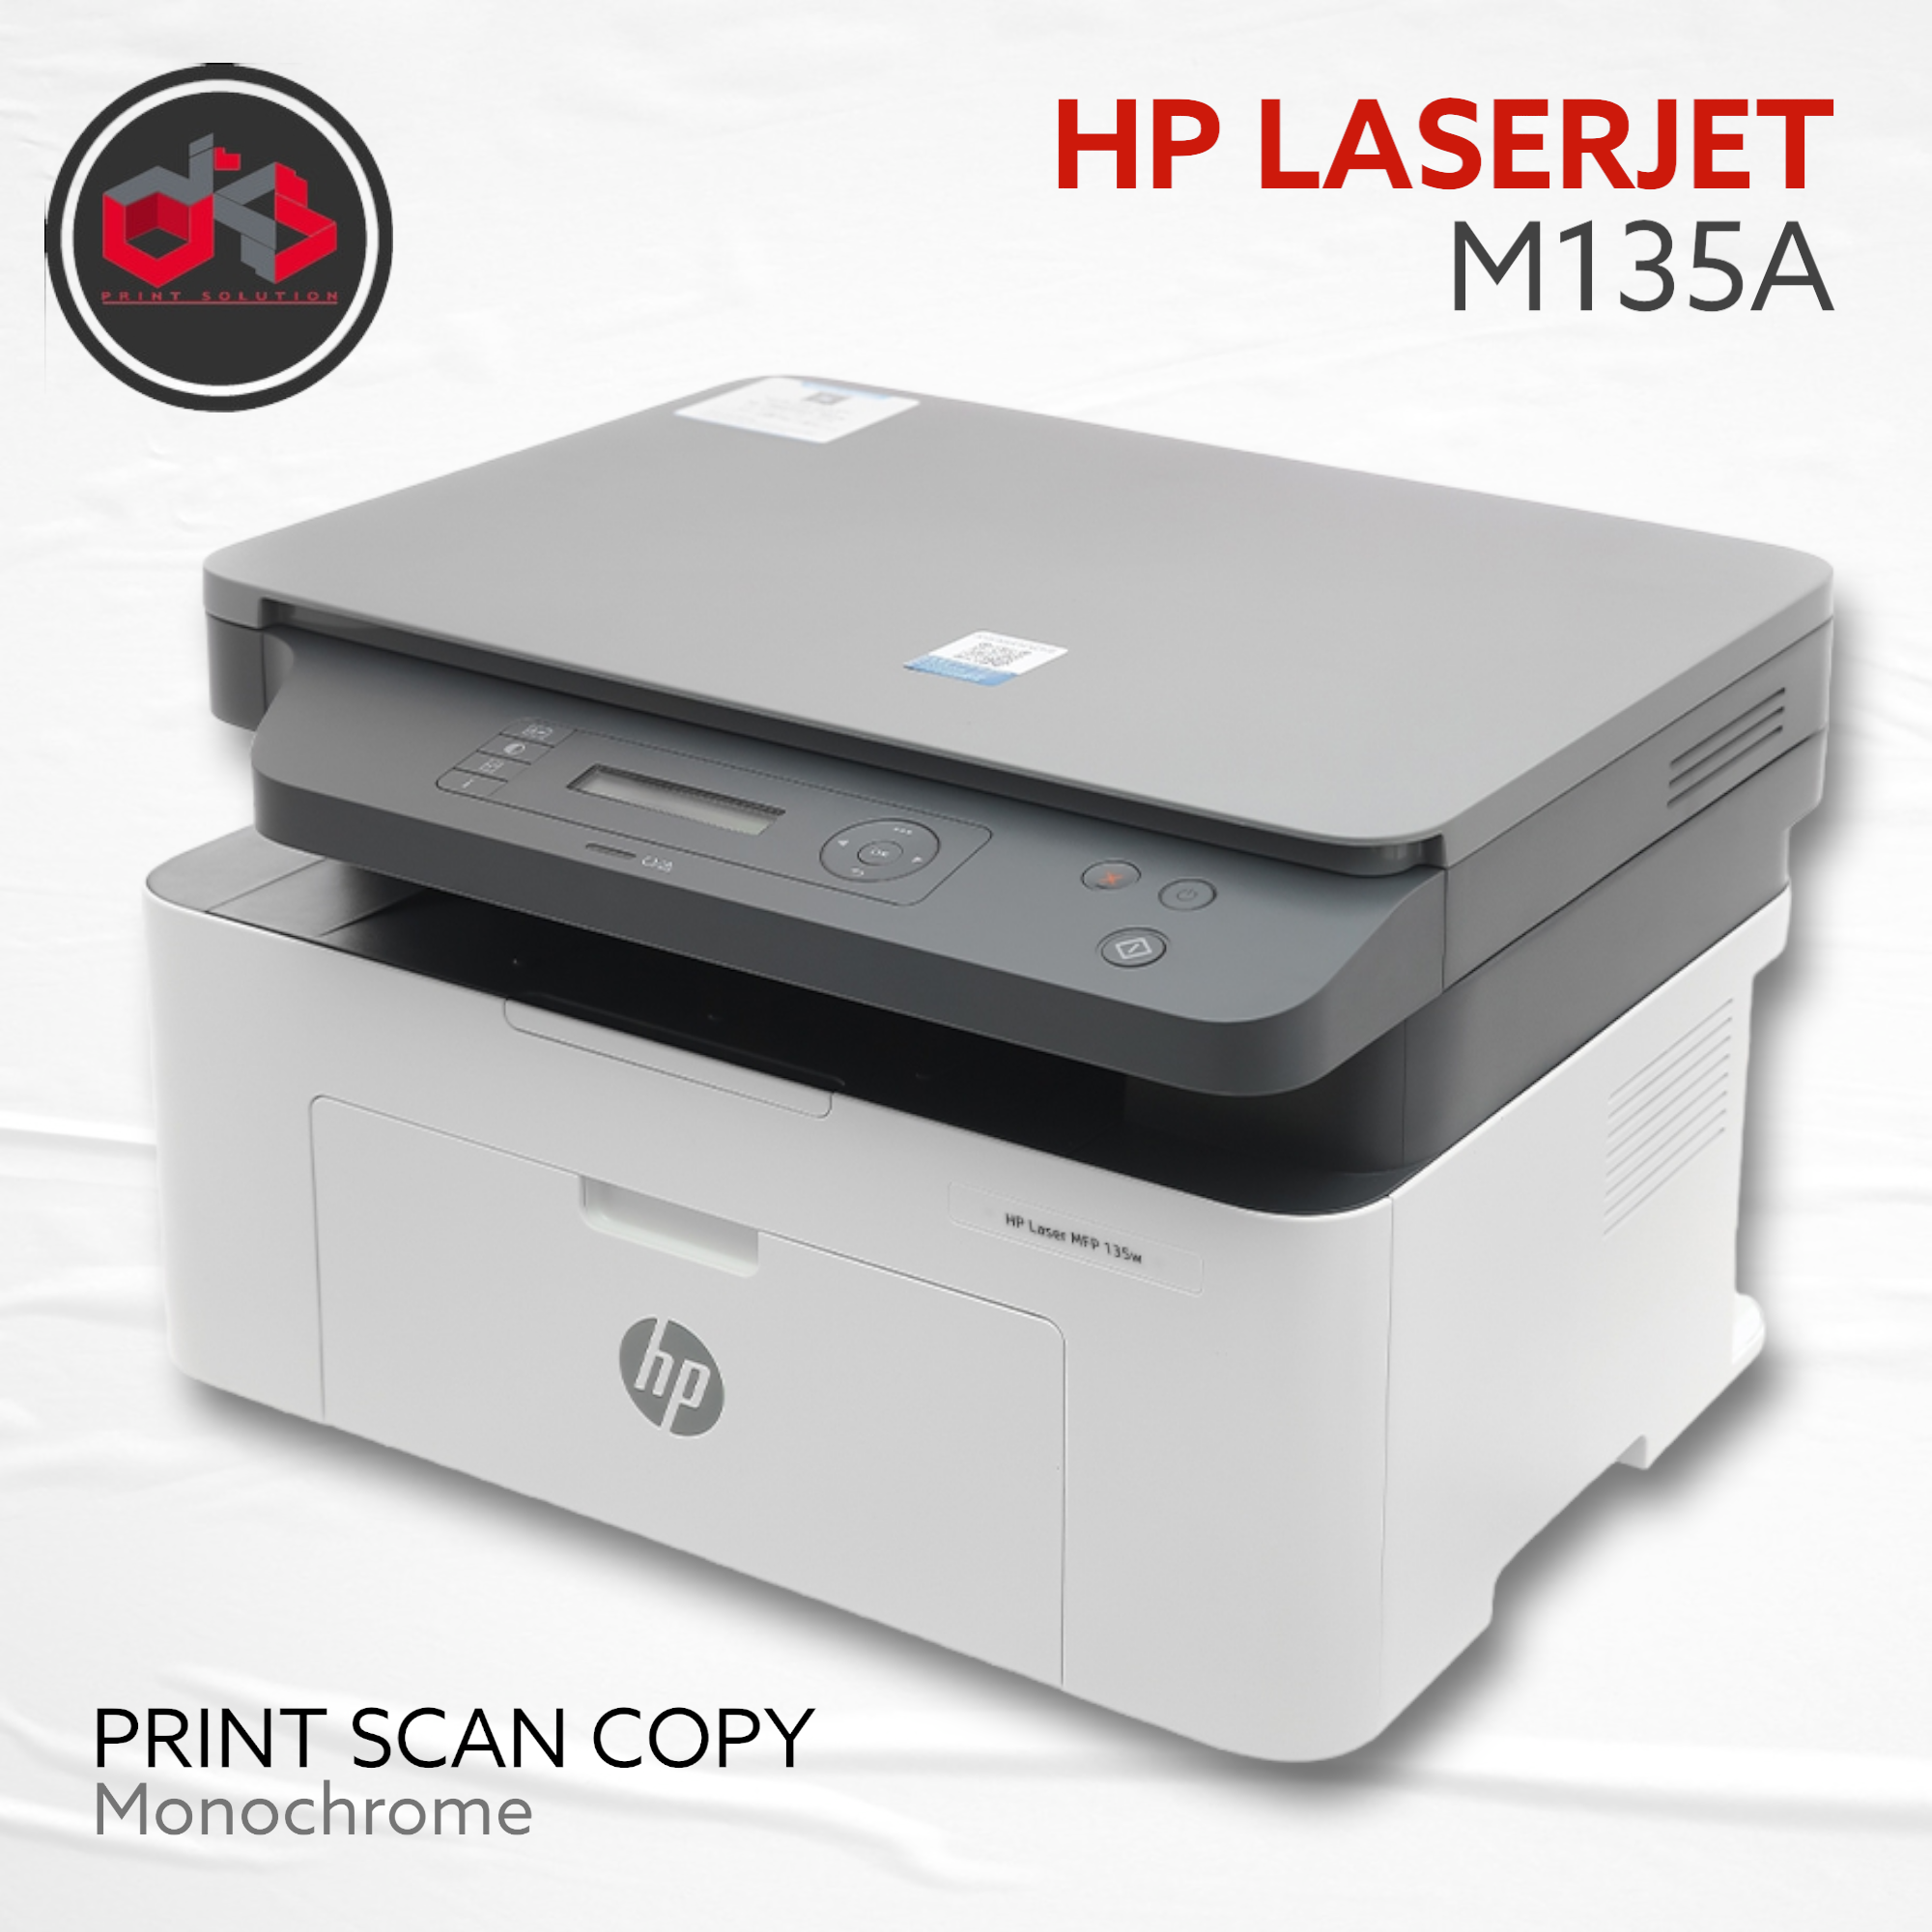 Printer Hp Laserjet M135a Print Scan Copy Monochrome Lazada Indonesia 7288